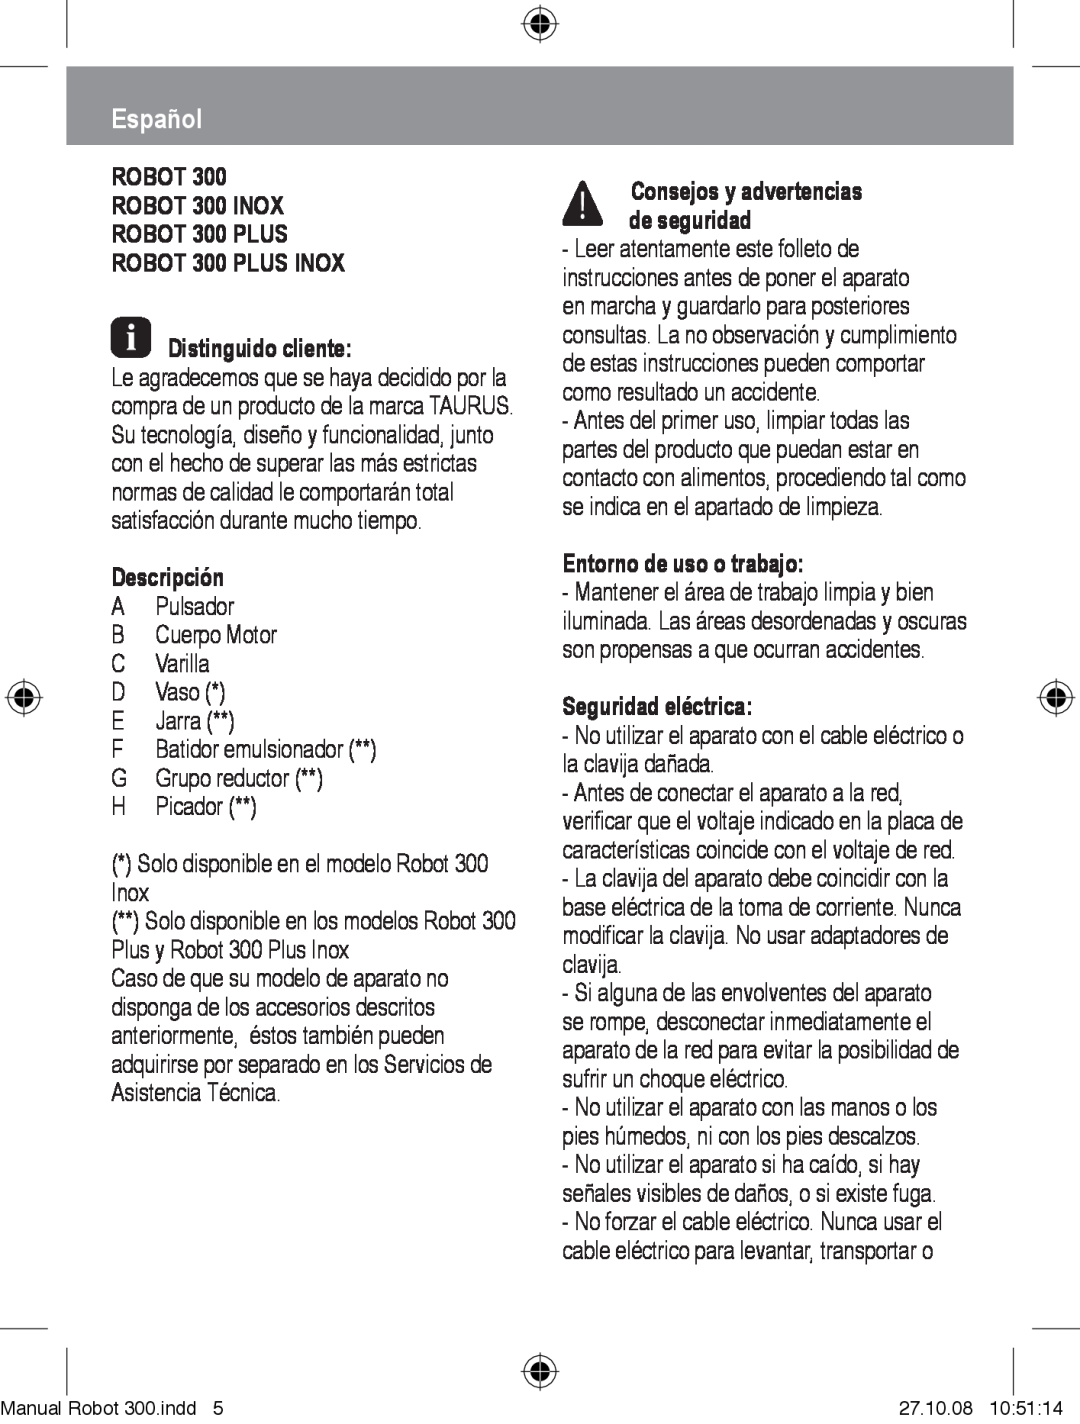 Taurus Group manual Español, Robot Robot 300 Inox Robot 300 Plus Robot 300 Plus Inox, Distinguido cliente, Descripción 